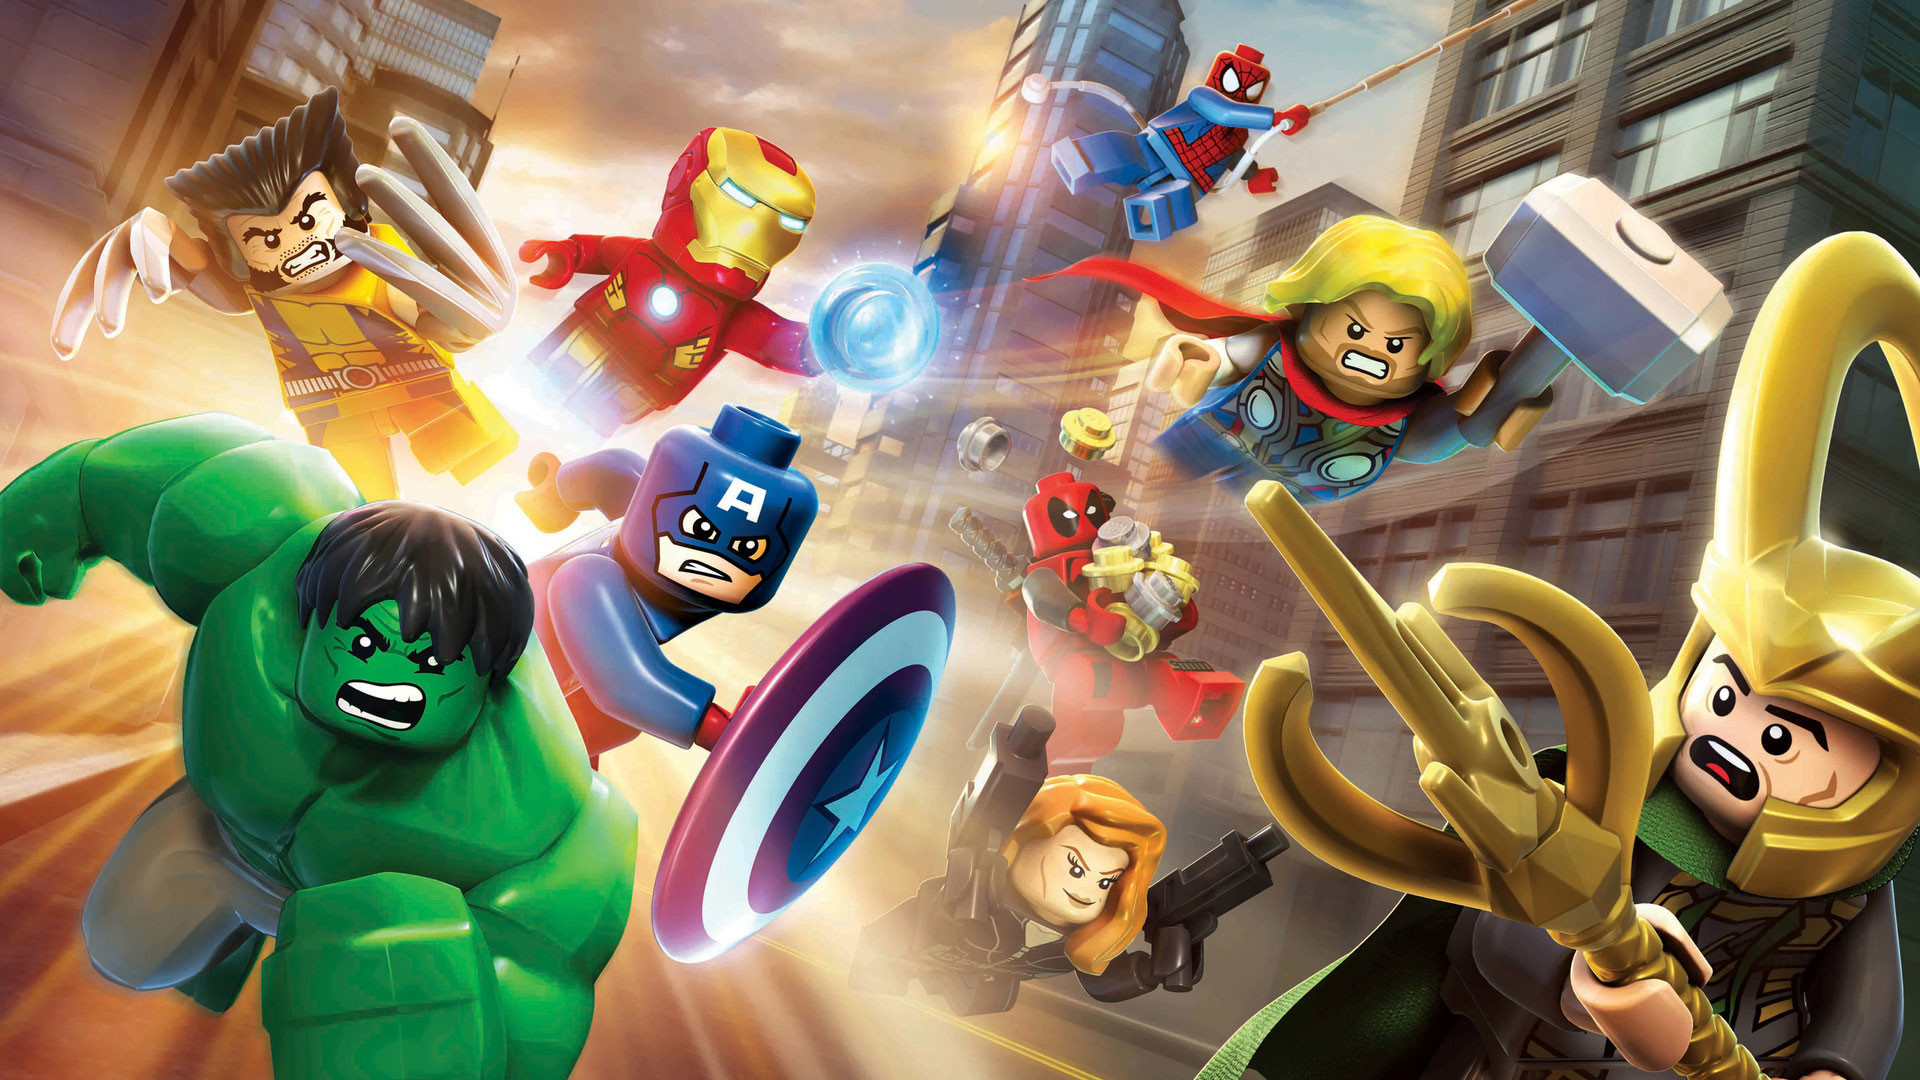 1920x1080 Lego Marvel's Avengers 4K Wallpaper | Lego Marvel's Avengers 1080p ...